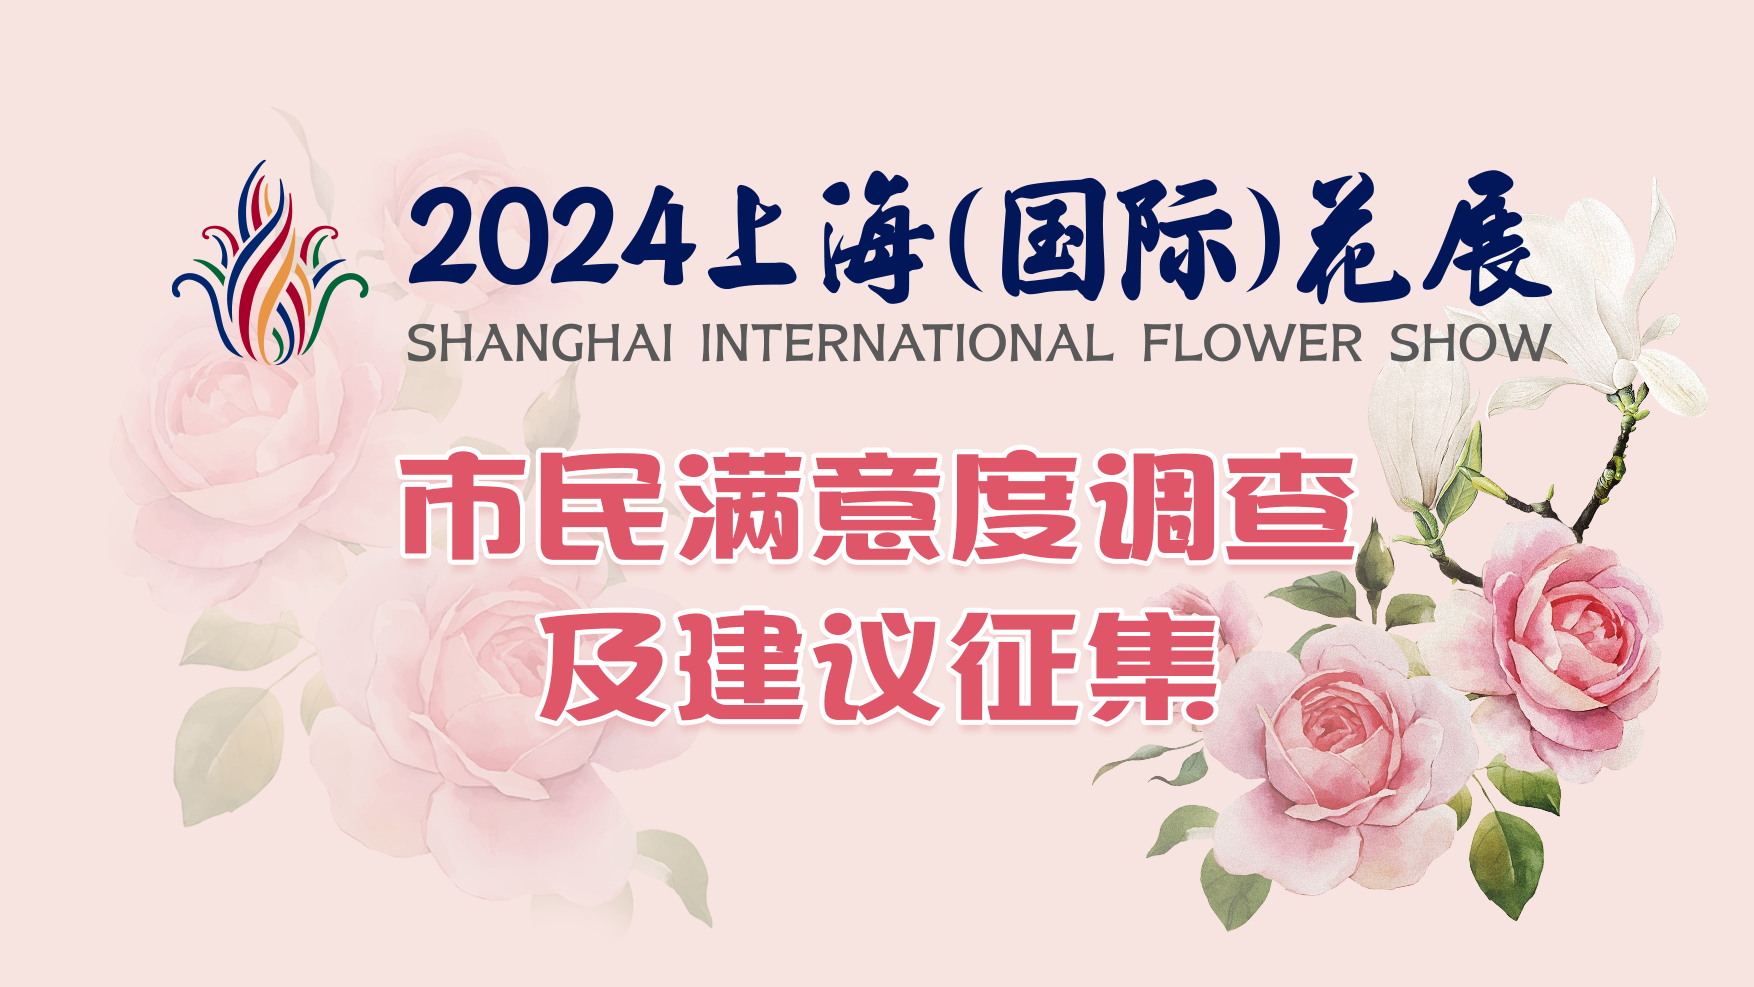 你对上海（国际）花展有何感受？三个点位上新“红邮筒”征集市民建议